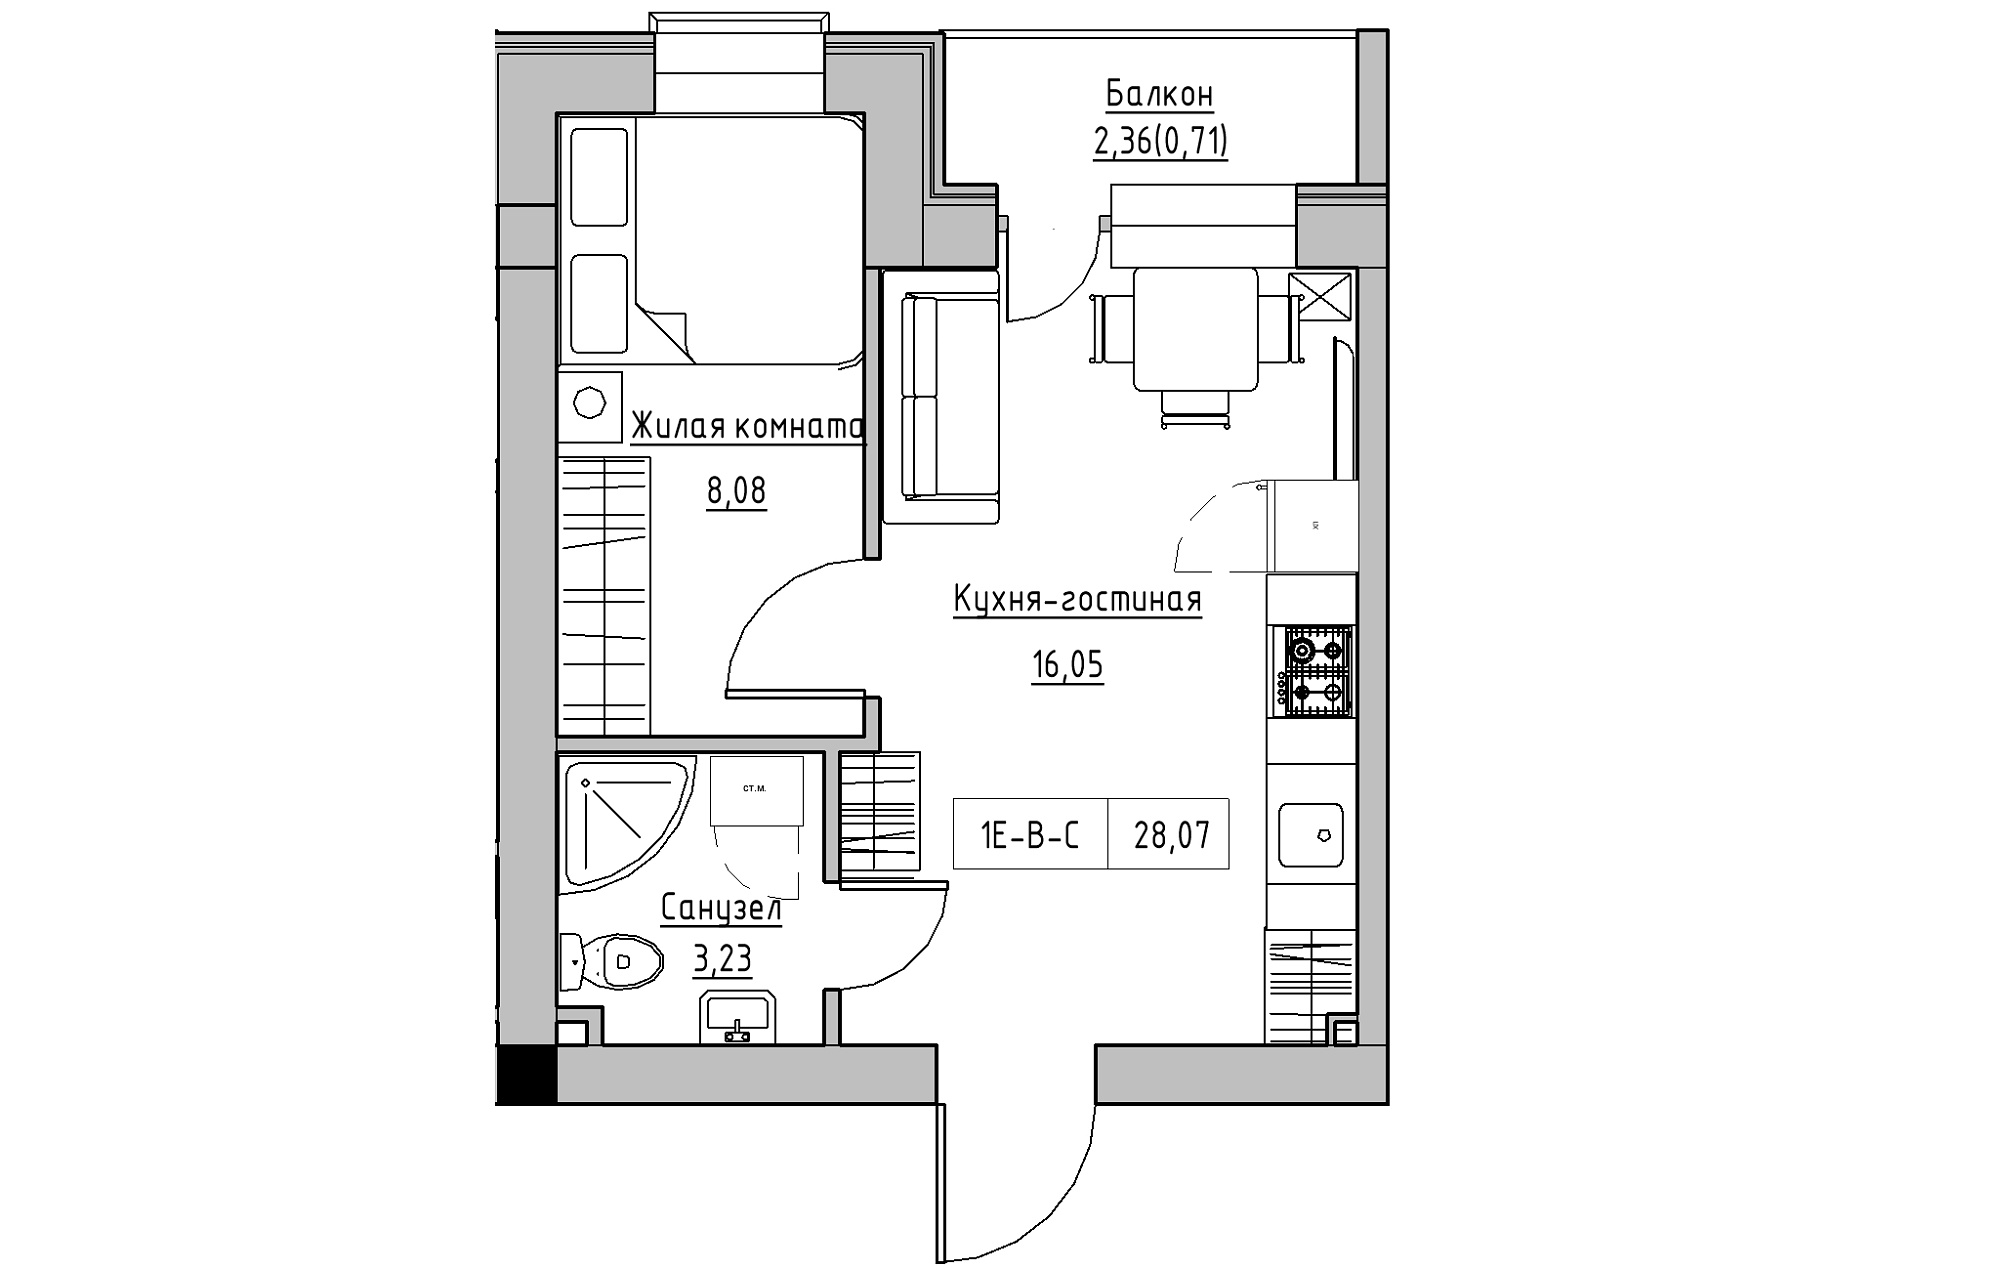 Планування 1-к квартира площею 28.07м2, KS-018-05/0007.